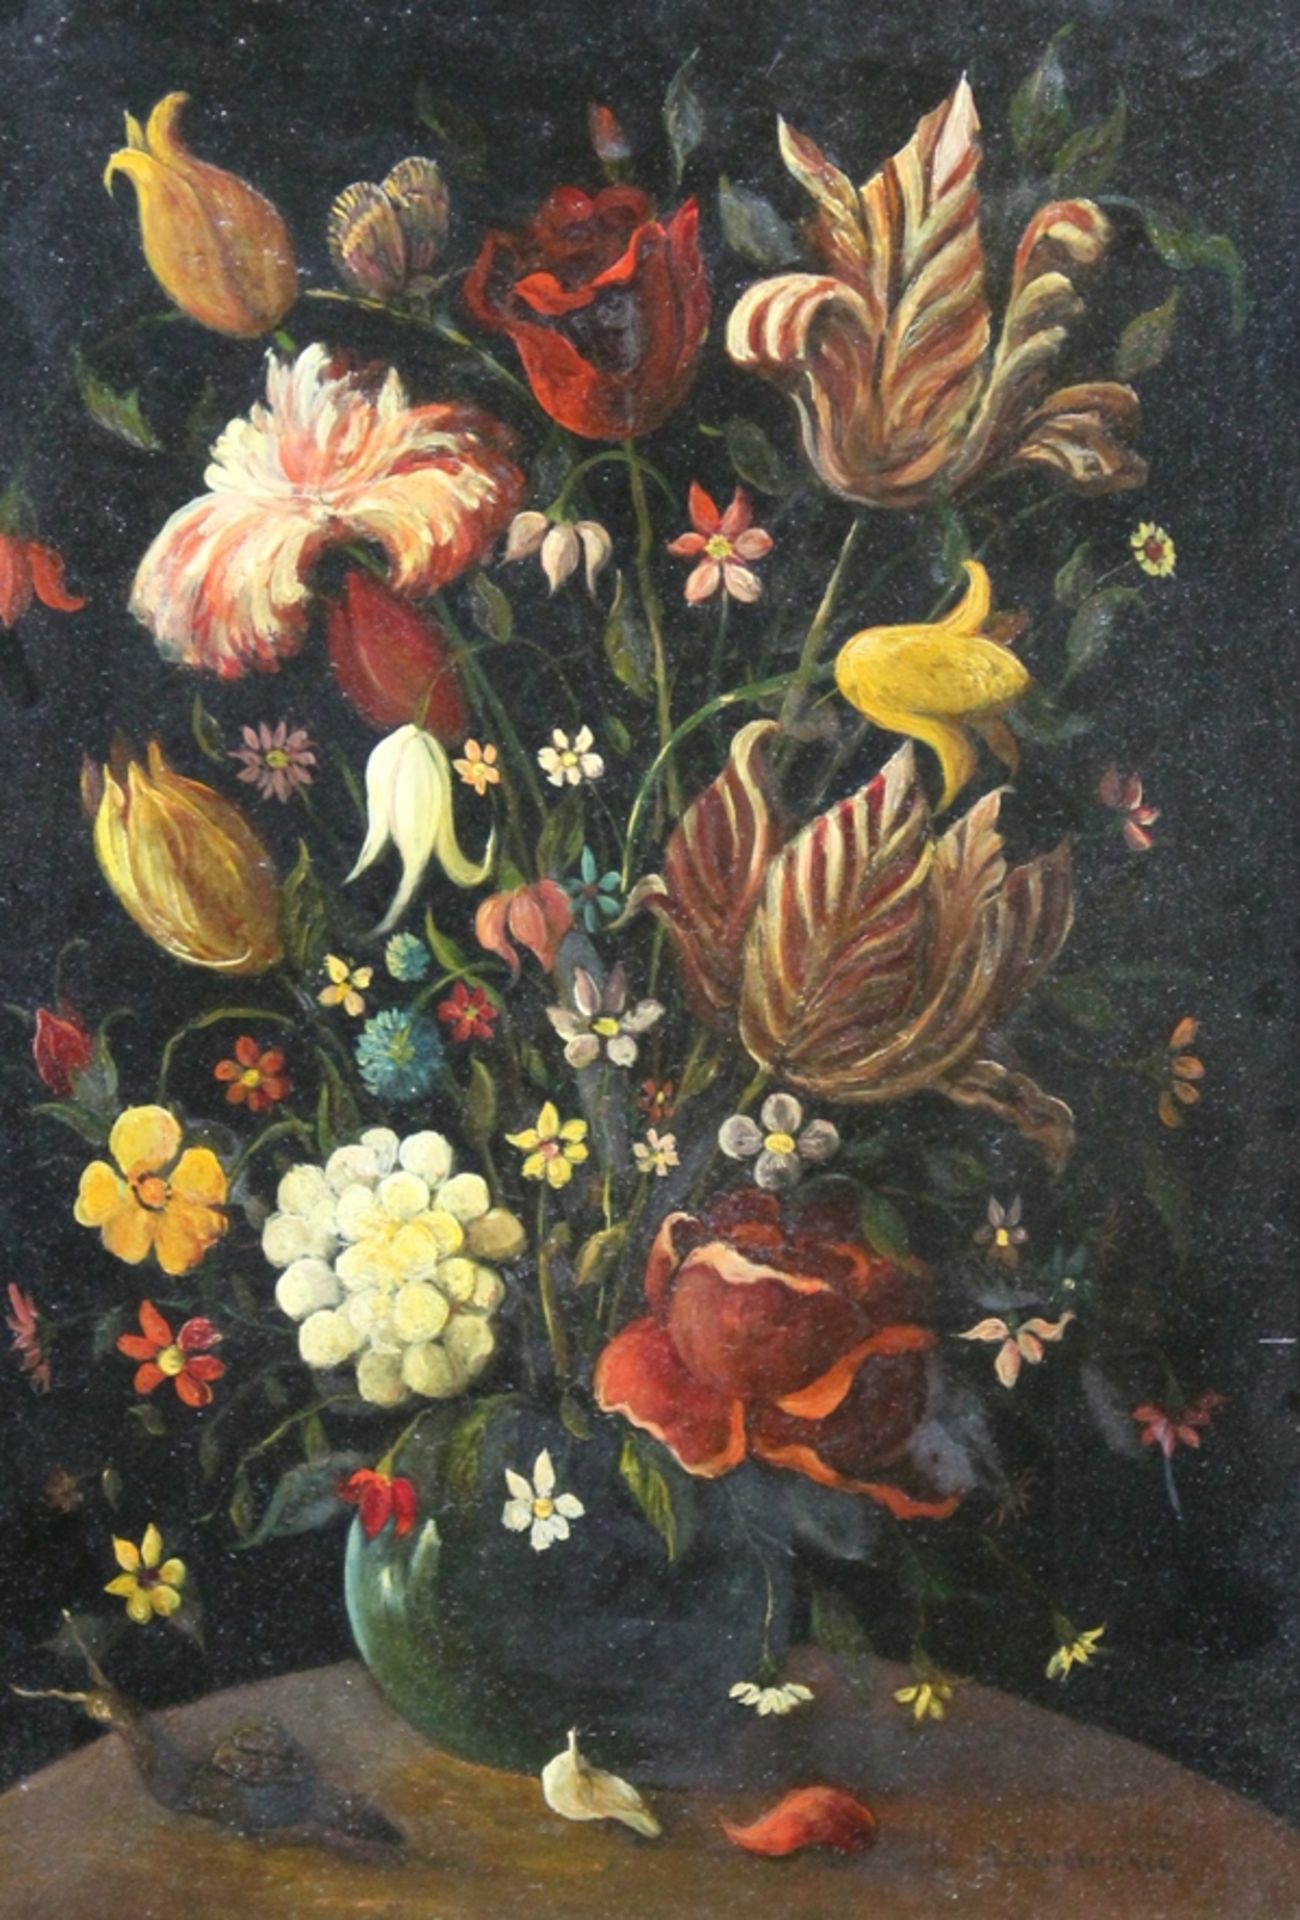 Holländische Schule, Anhänger von Ambrosius Bosschaert, 17. Jhd., Blumen in Vase, Apokryph unten re